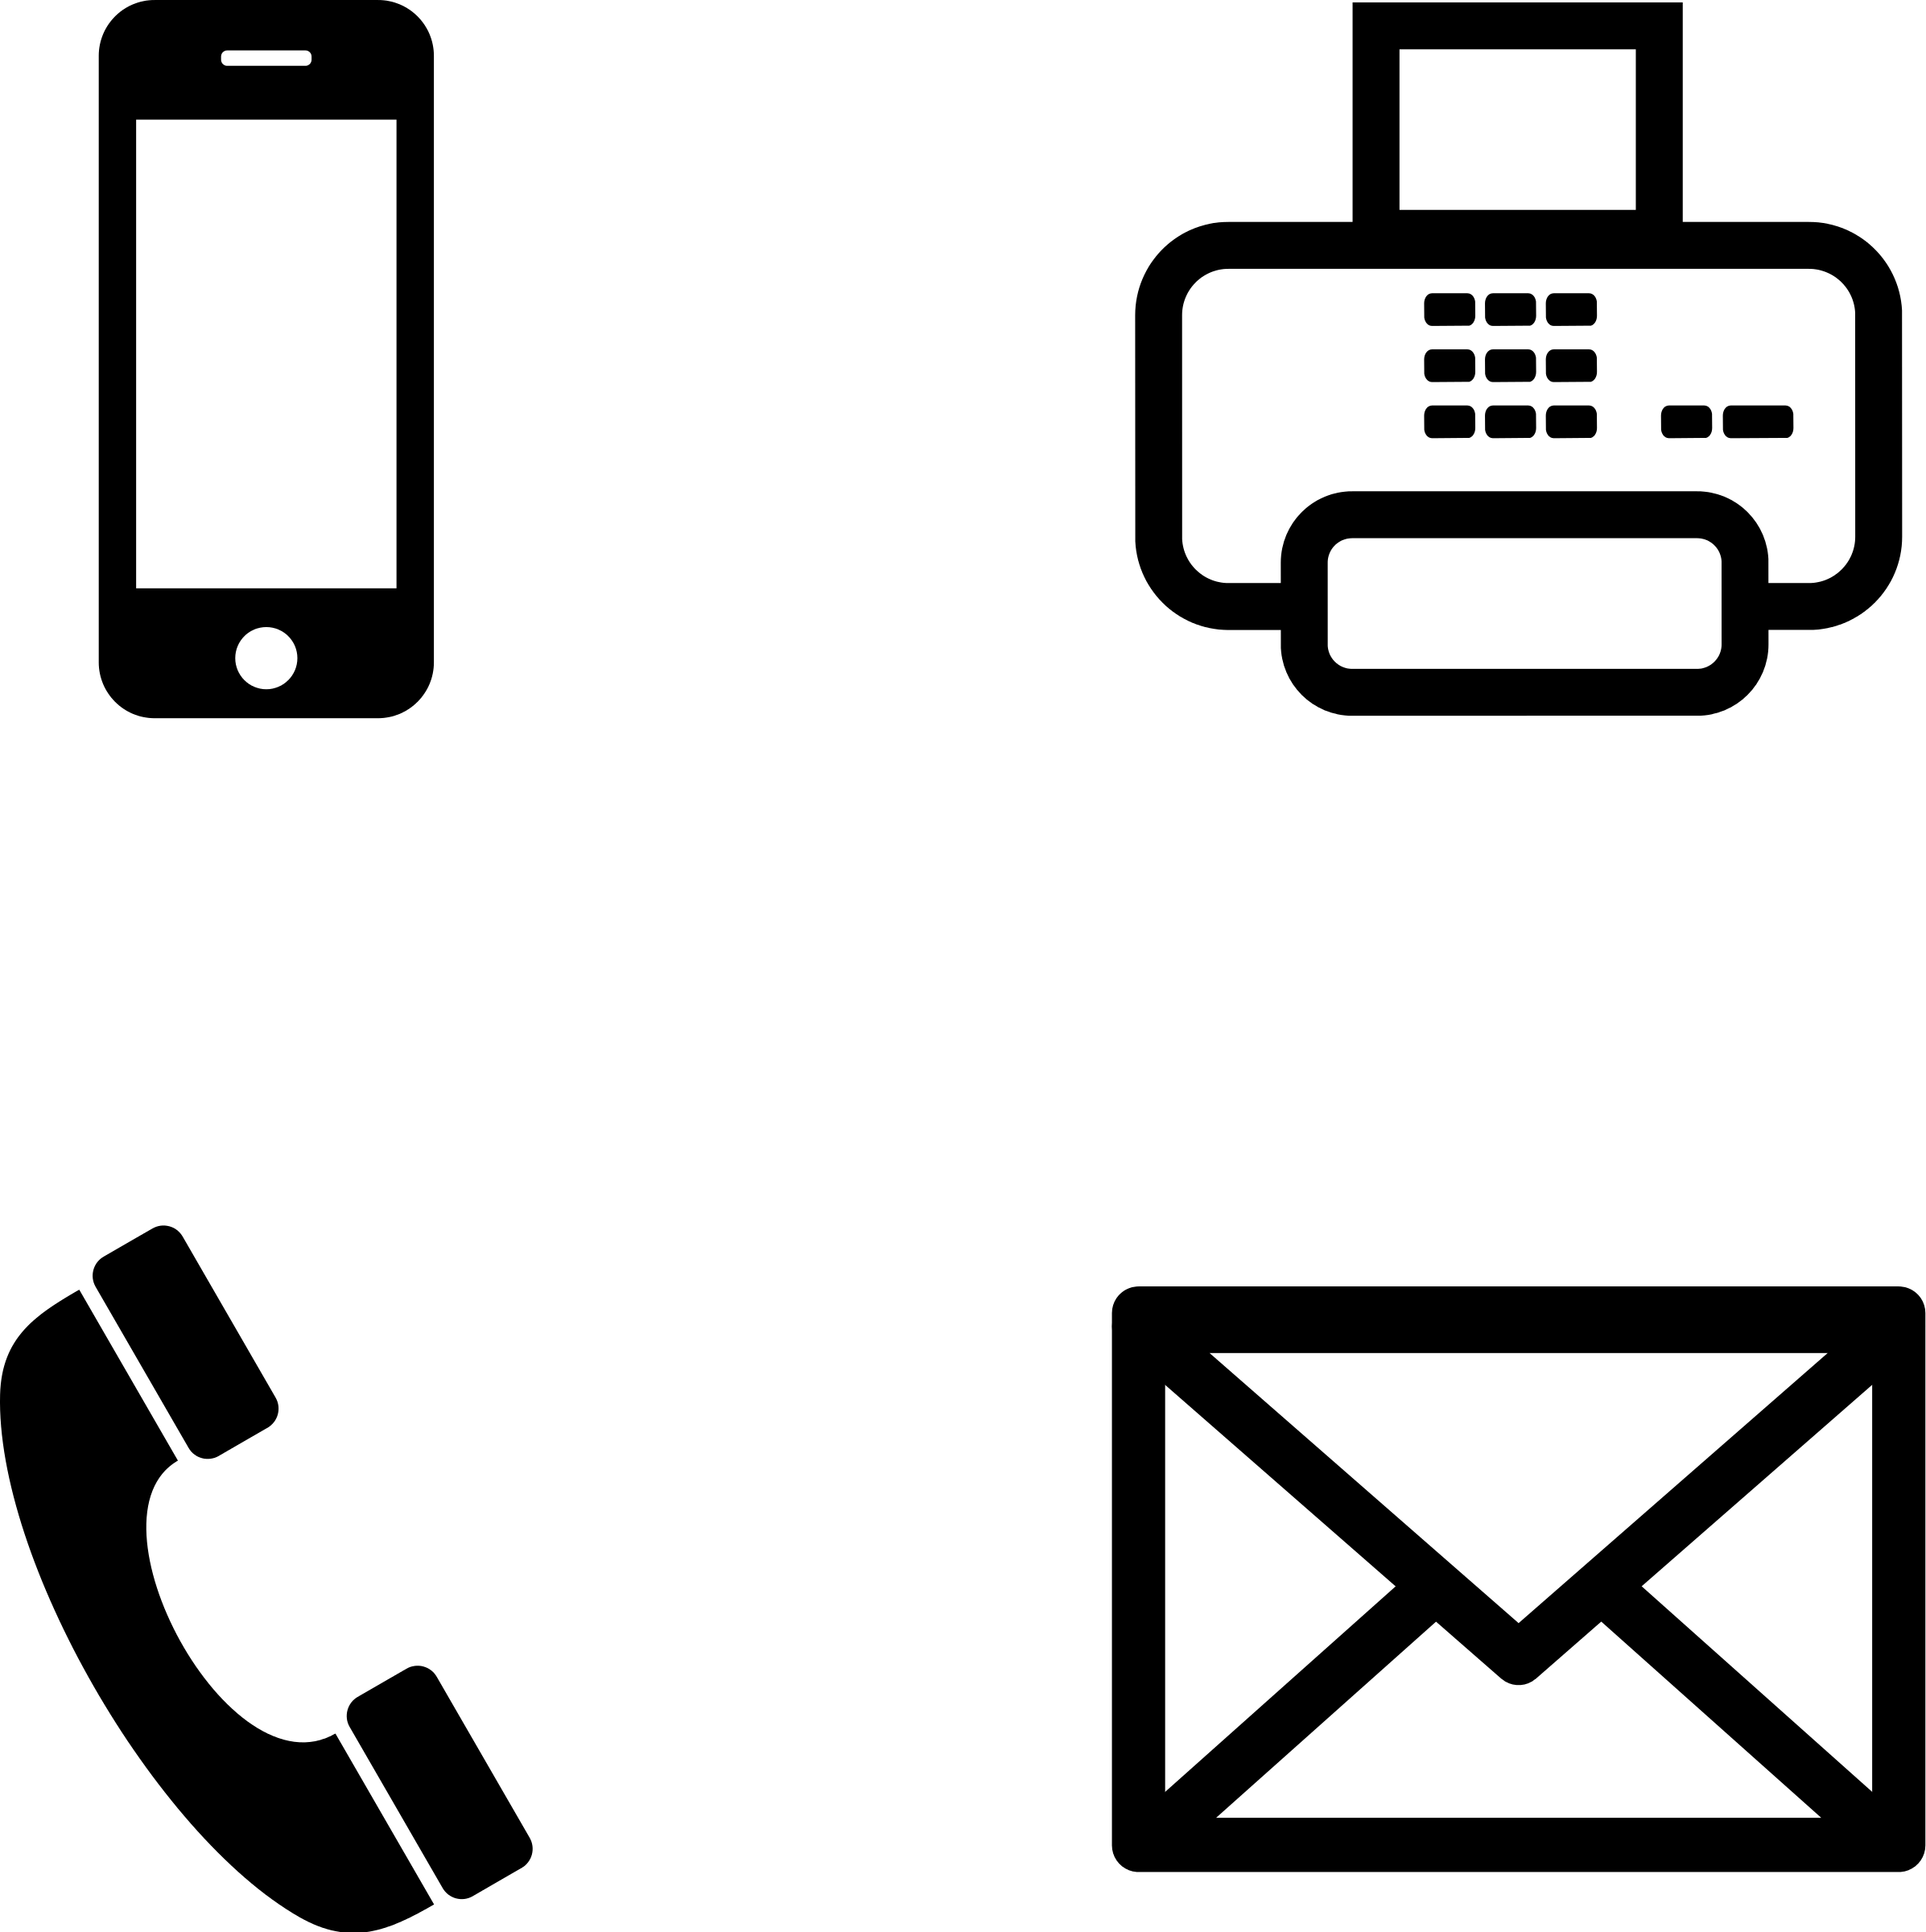 Телефон posting. Значок телефона. Символ телефона для визитки. Значок телефона и почты. Векторное изображение телефона.